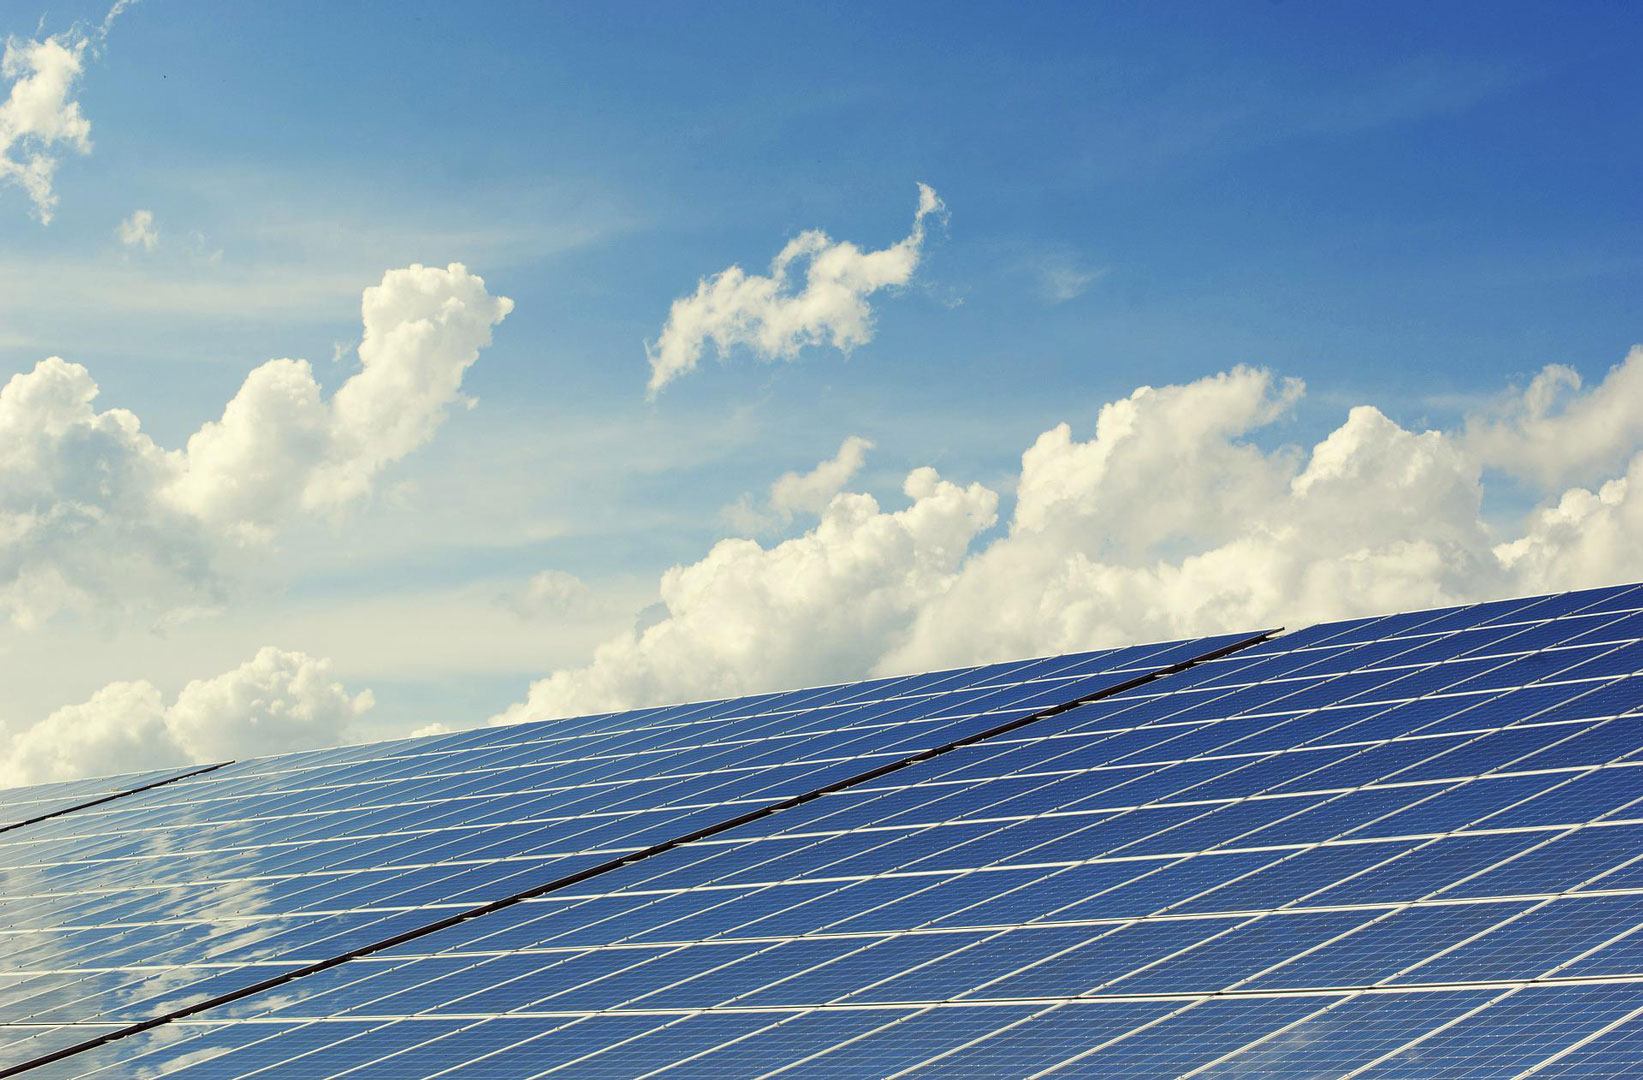 Solar photovoltaic energy systems